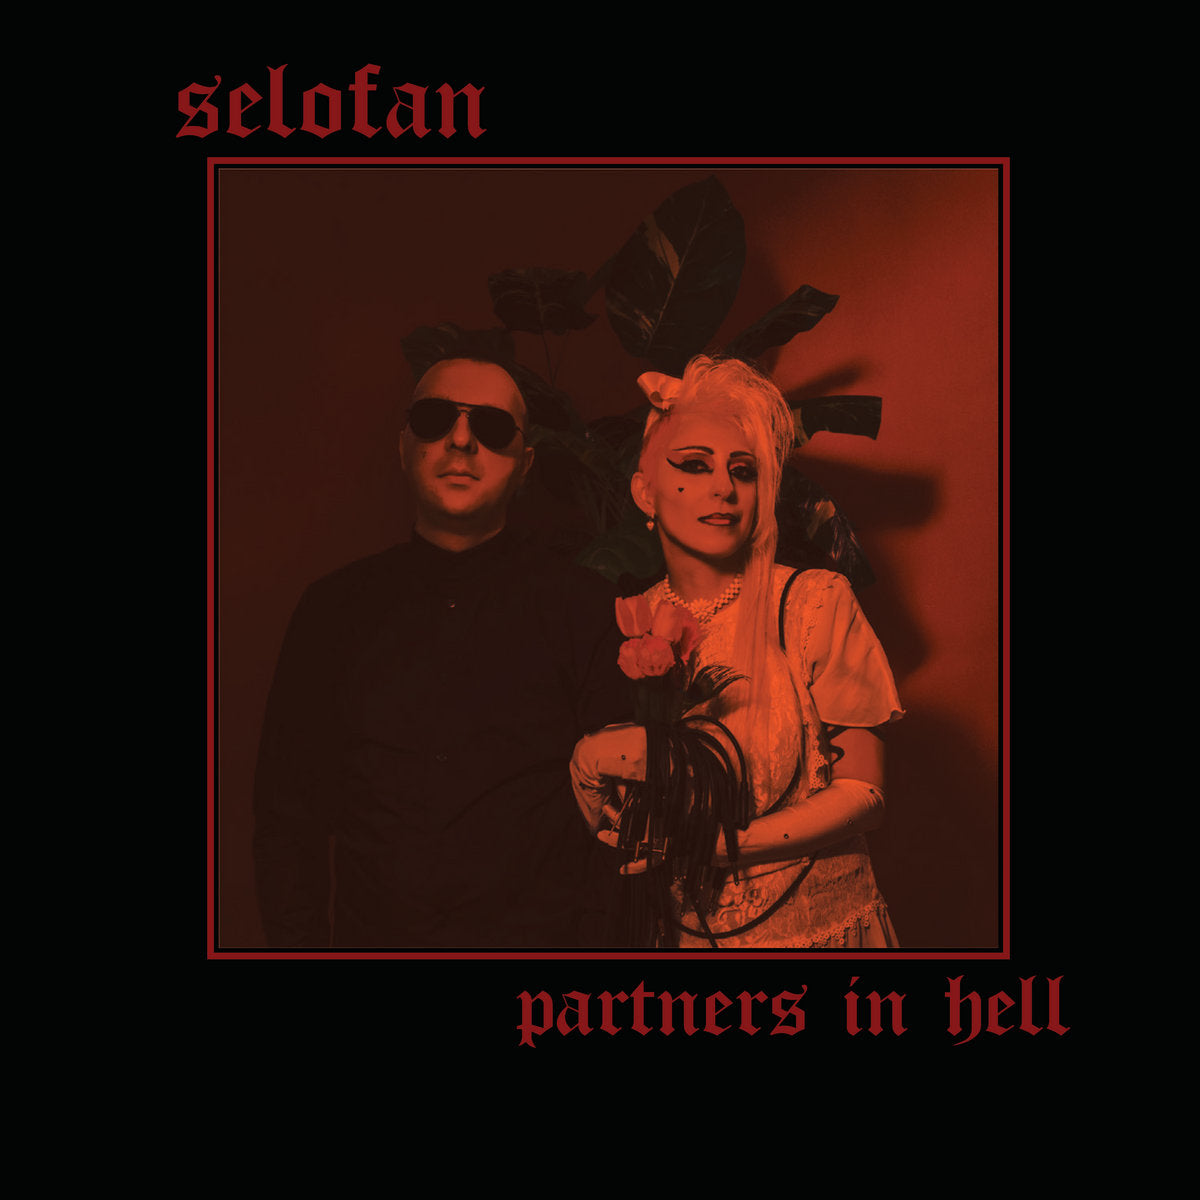 Selofan - Partners in Hell - LP